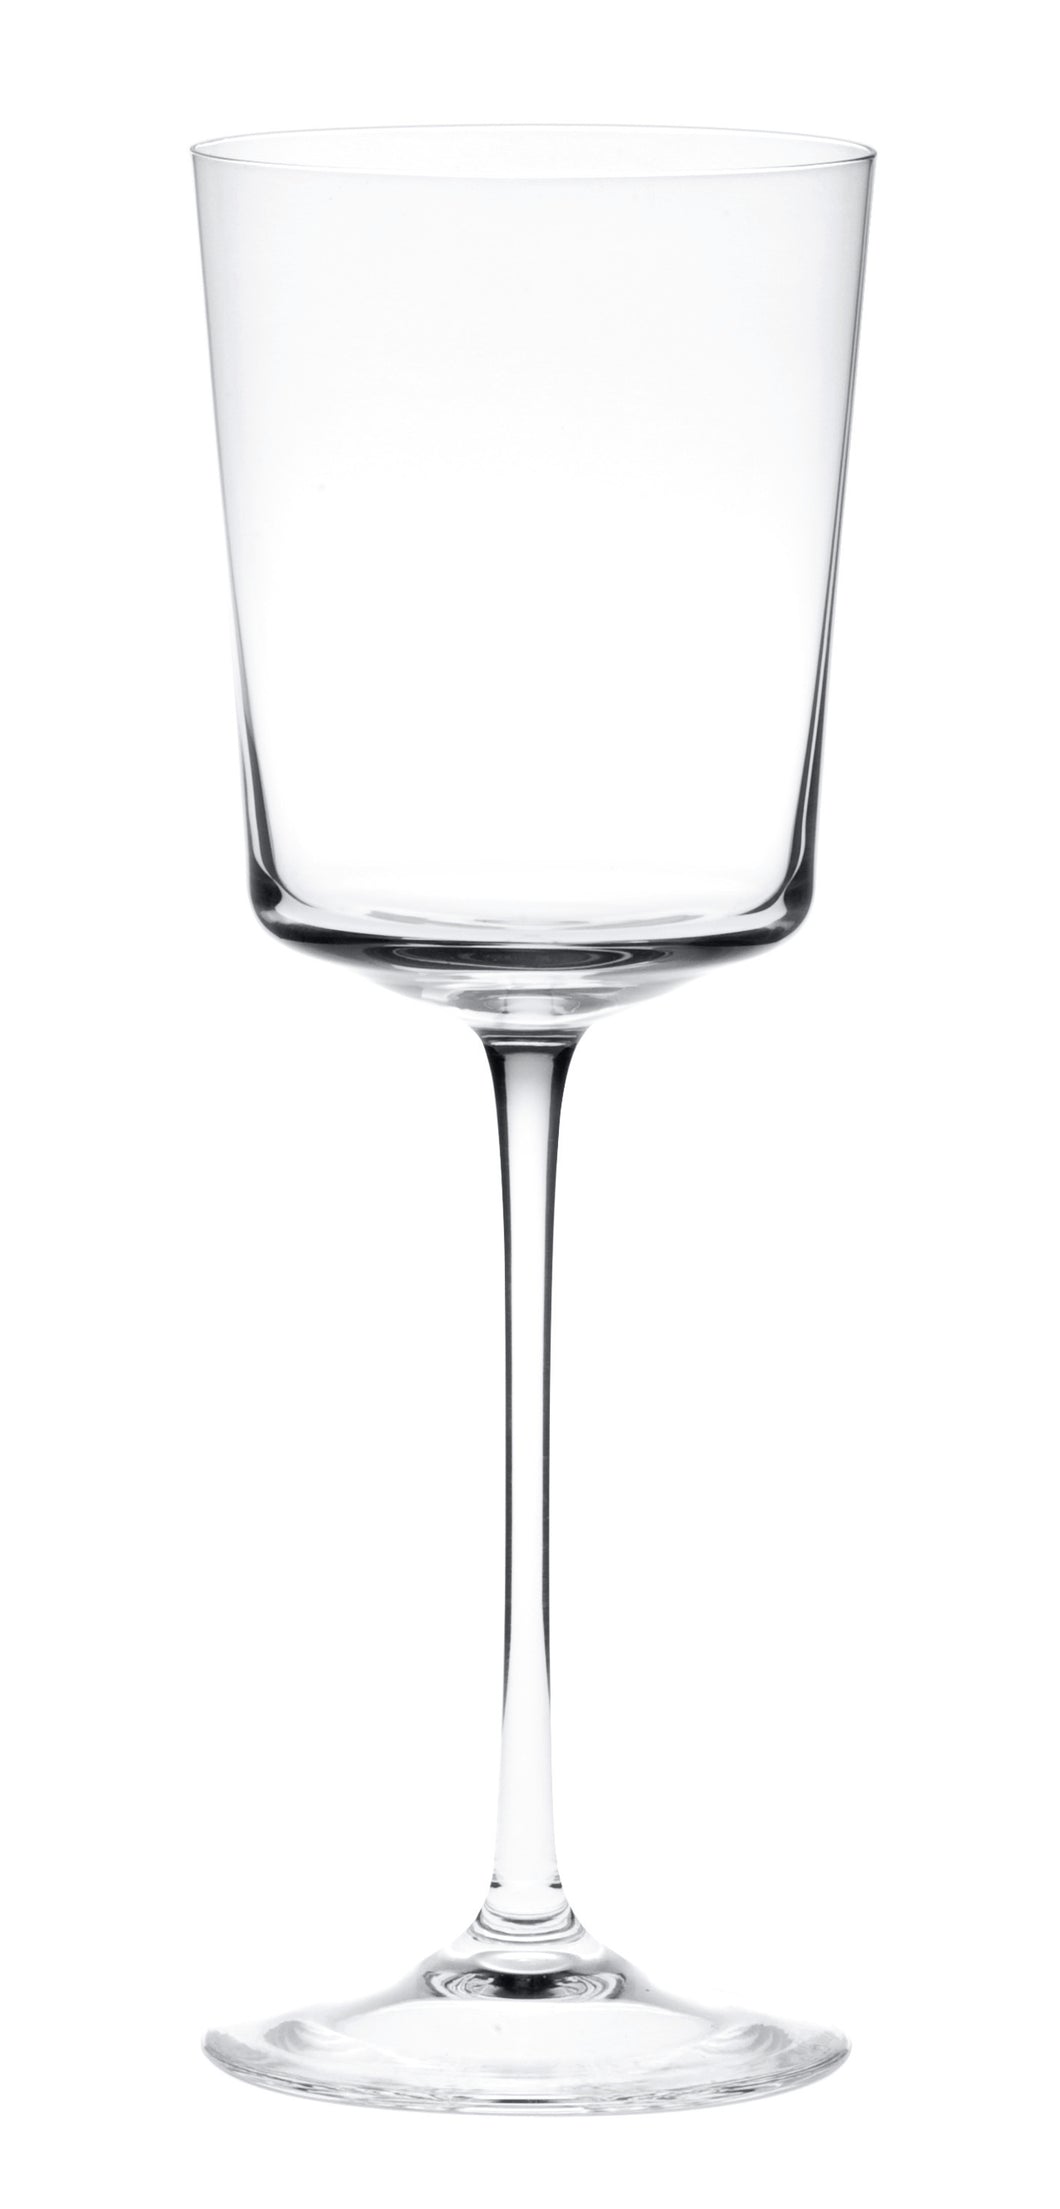 HEIGHTS klar, offen glatt - Weißweinglas 215 mm